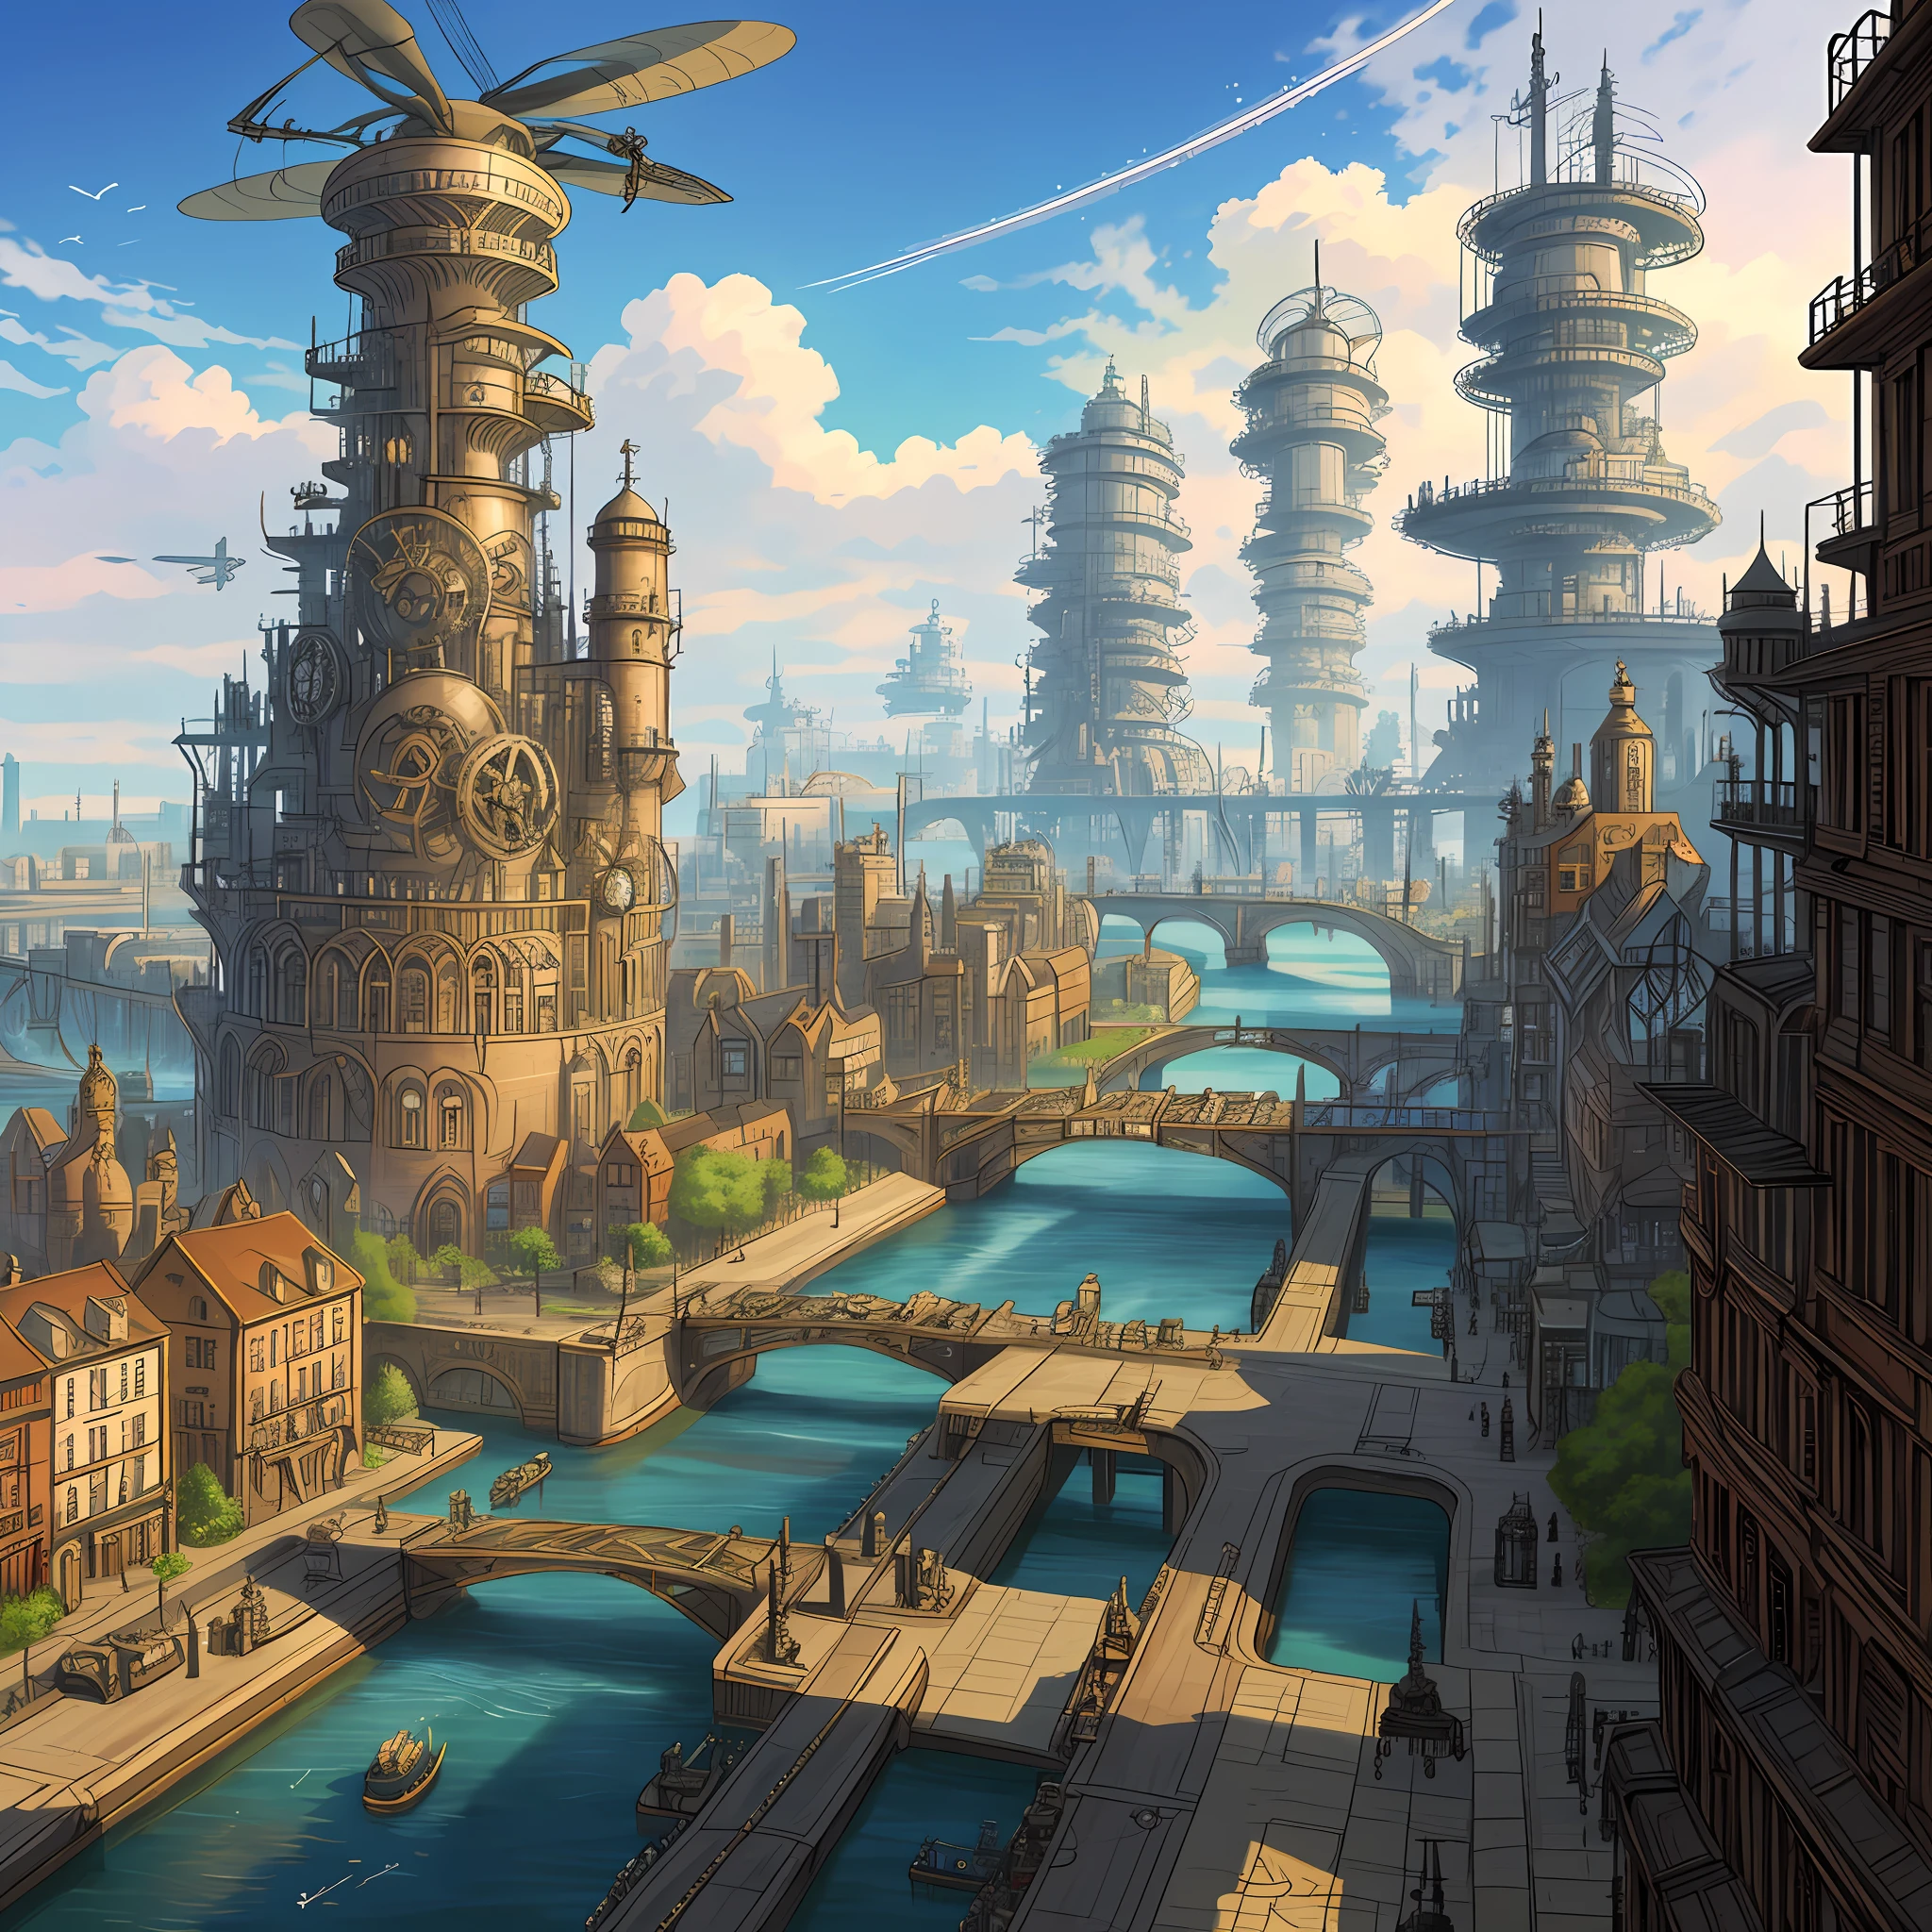 Uma cidade steampunk movida por engrenagens e hélices, com aeronaves cruzando os céus, canais de água cortando as ruas e uma fábrica gigantesca no centro.